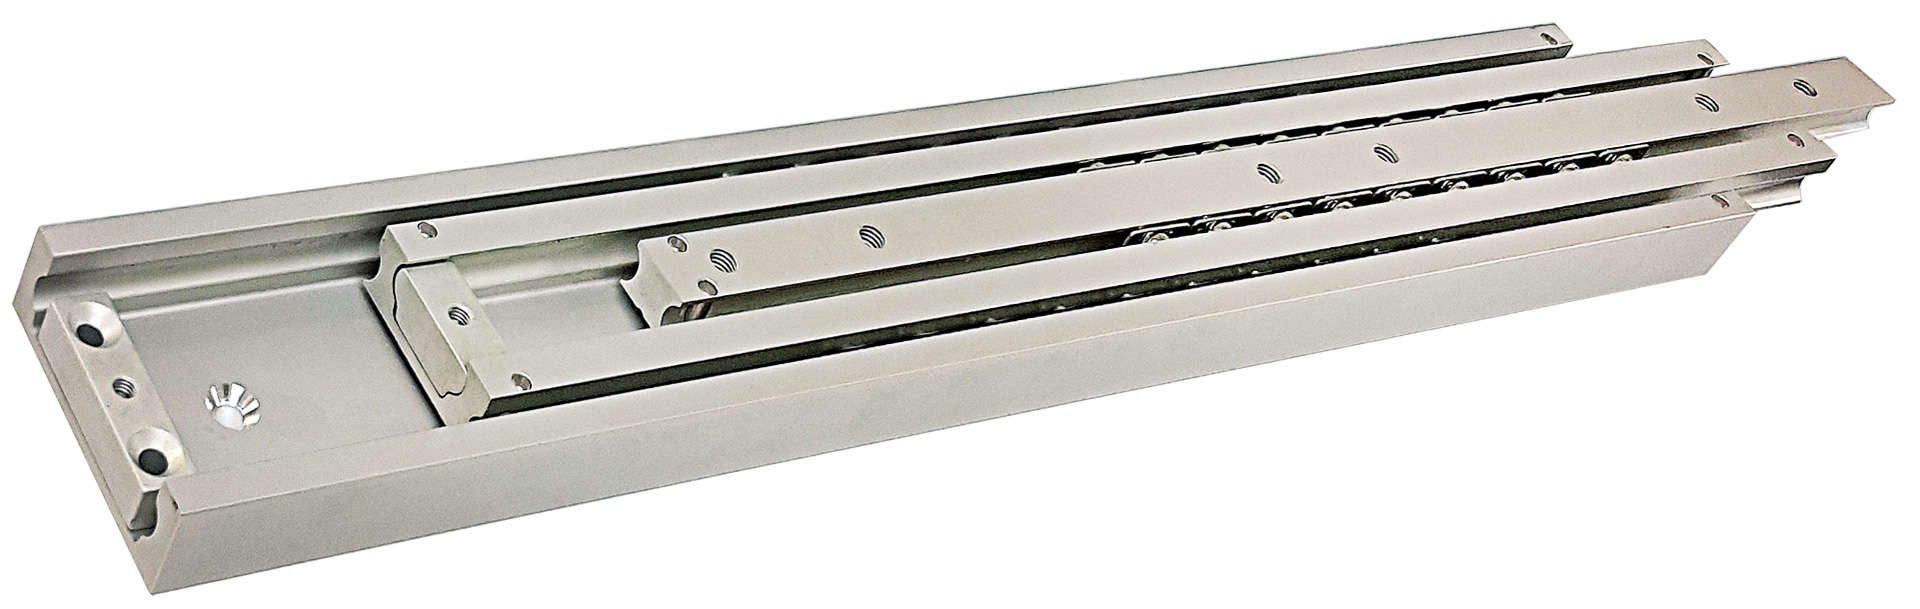 Aluminum Heavy Duty Cabinet Slides 660lbs Extra Heavy Dusty Slides